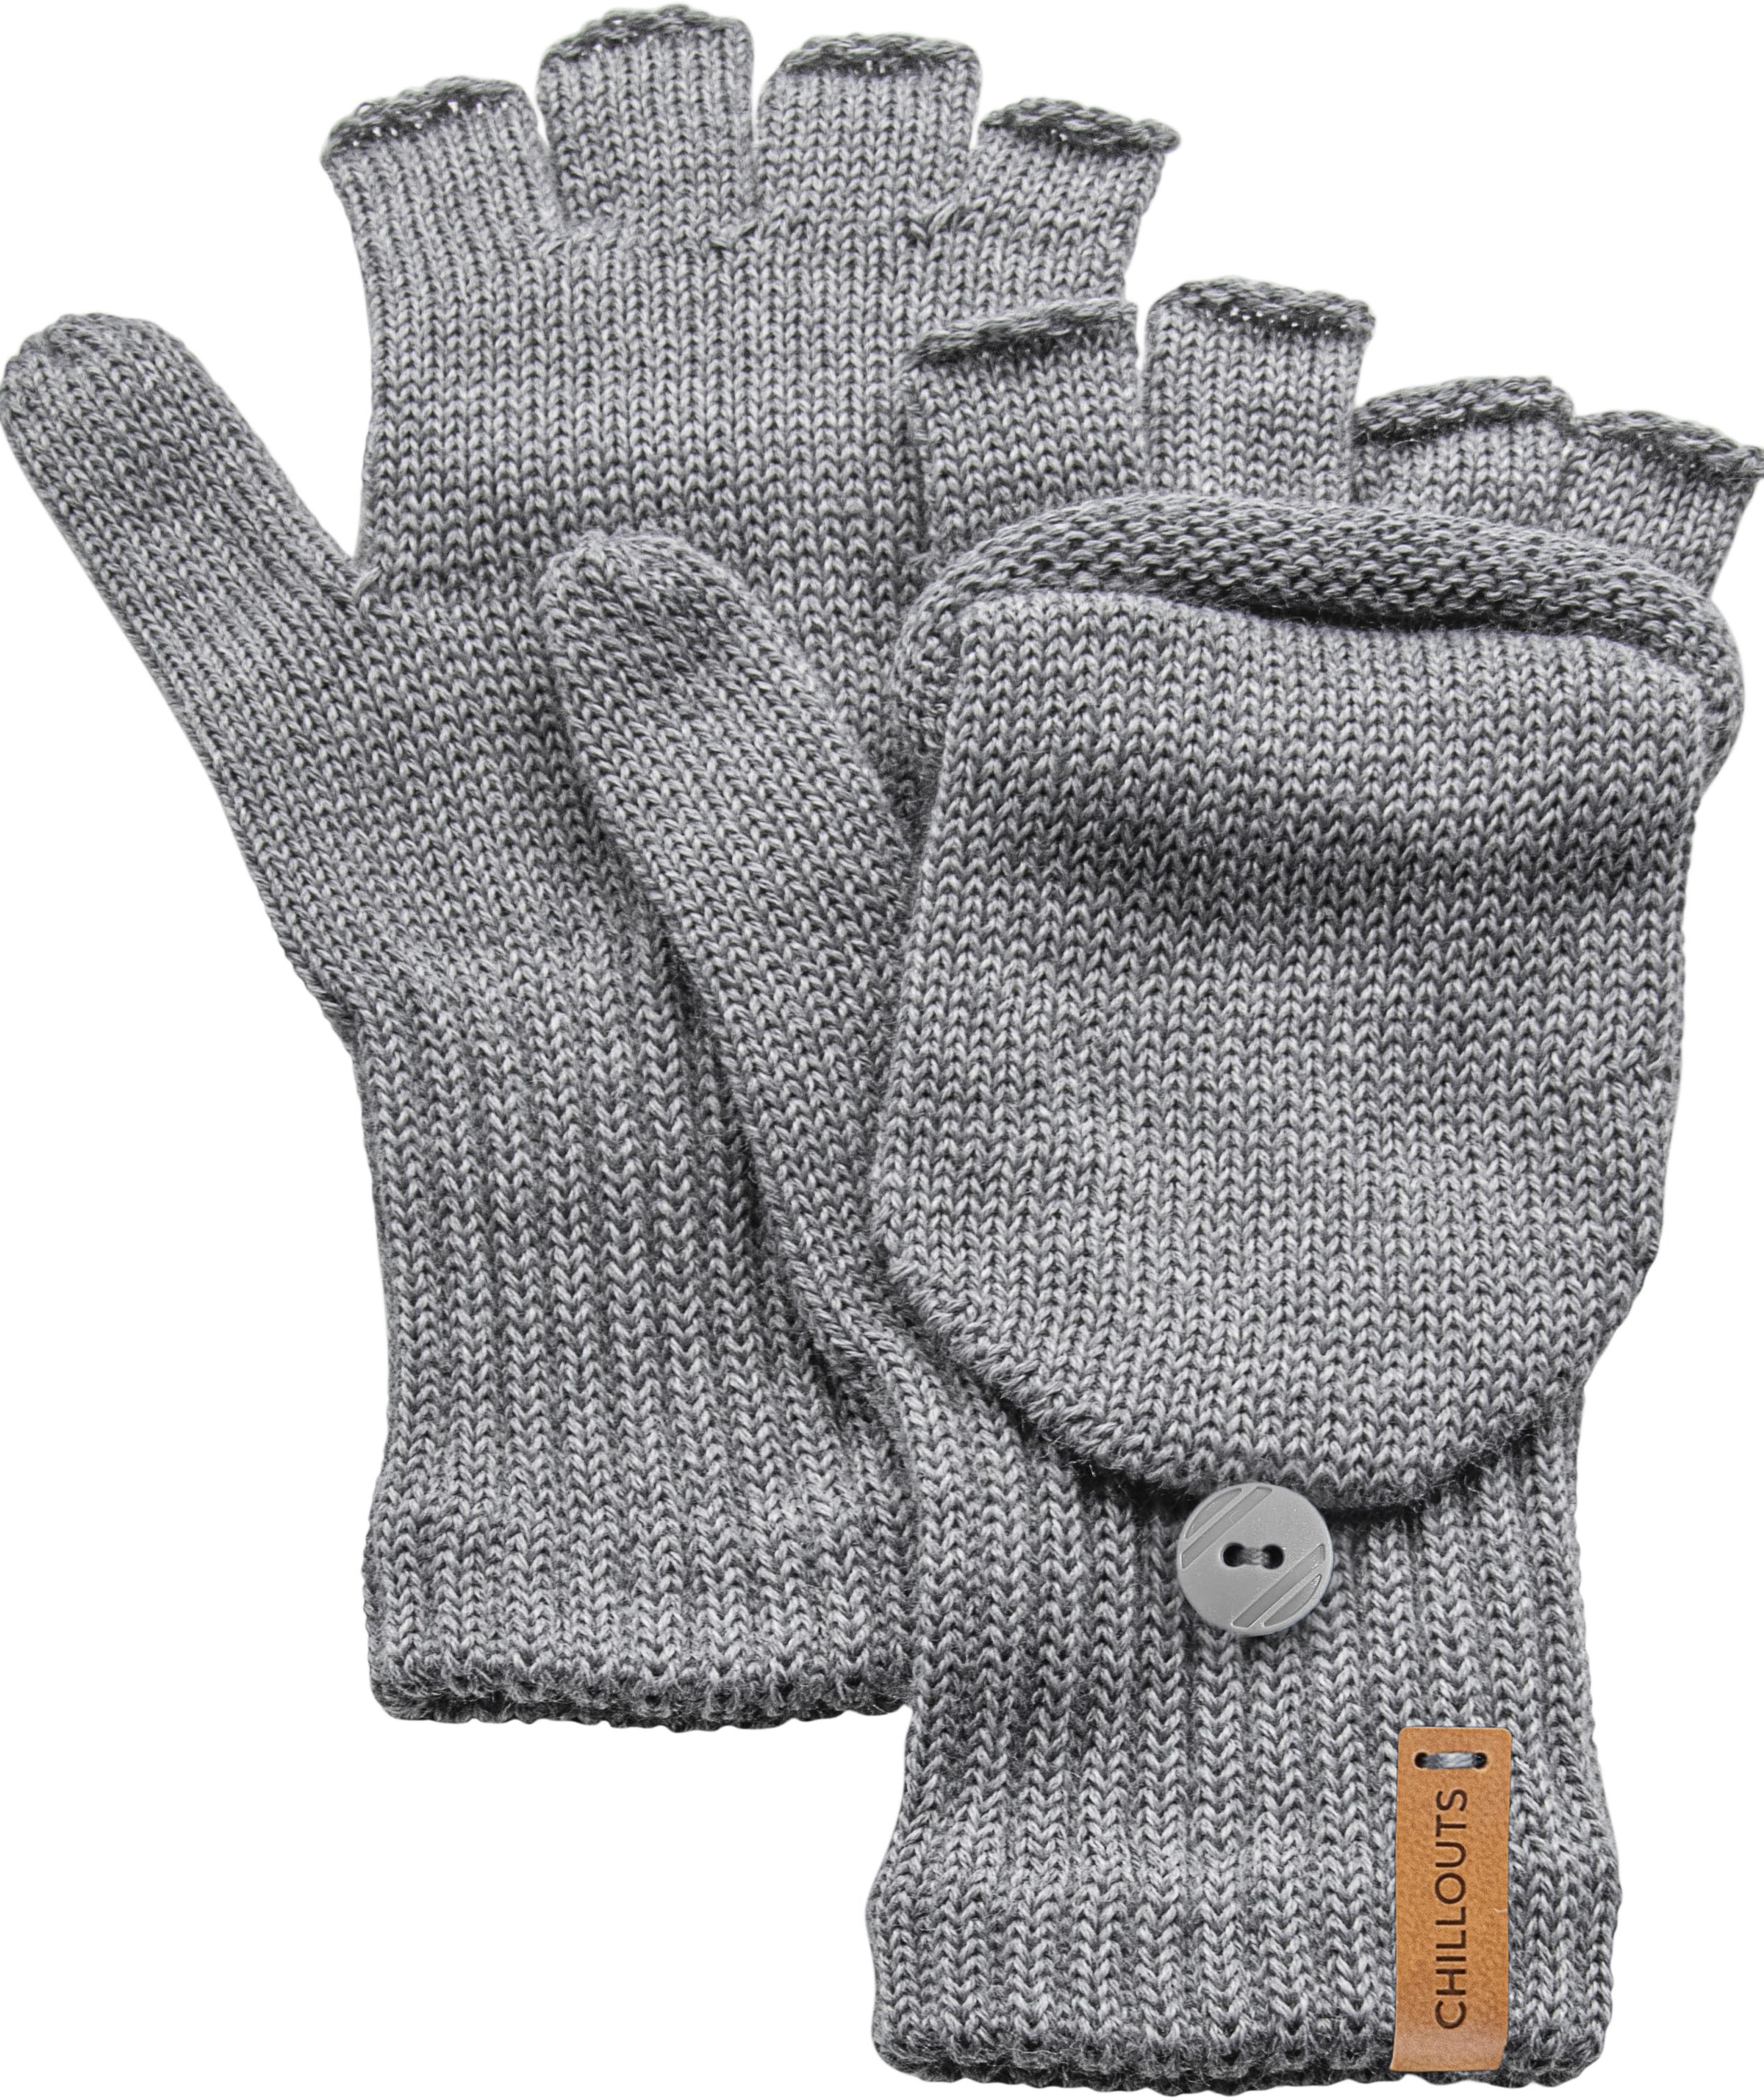 mit kaufen »Laney chillouts Strickhandschuhe Merino-Wolle Glove«,